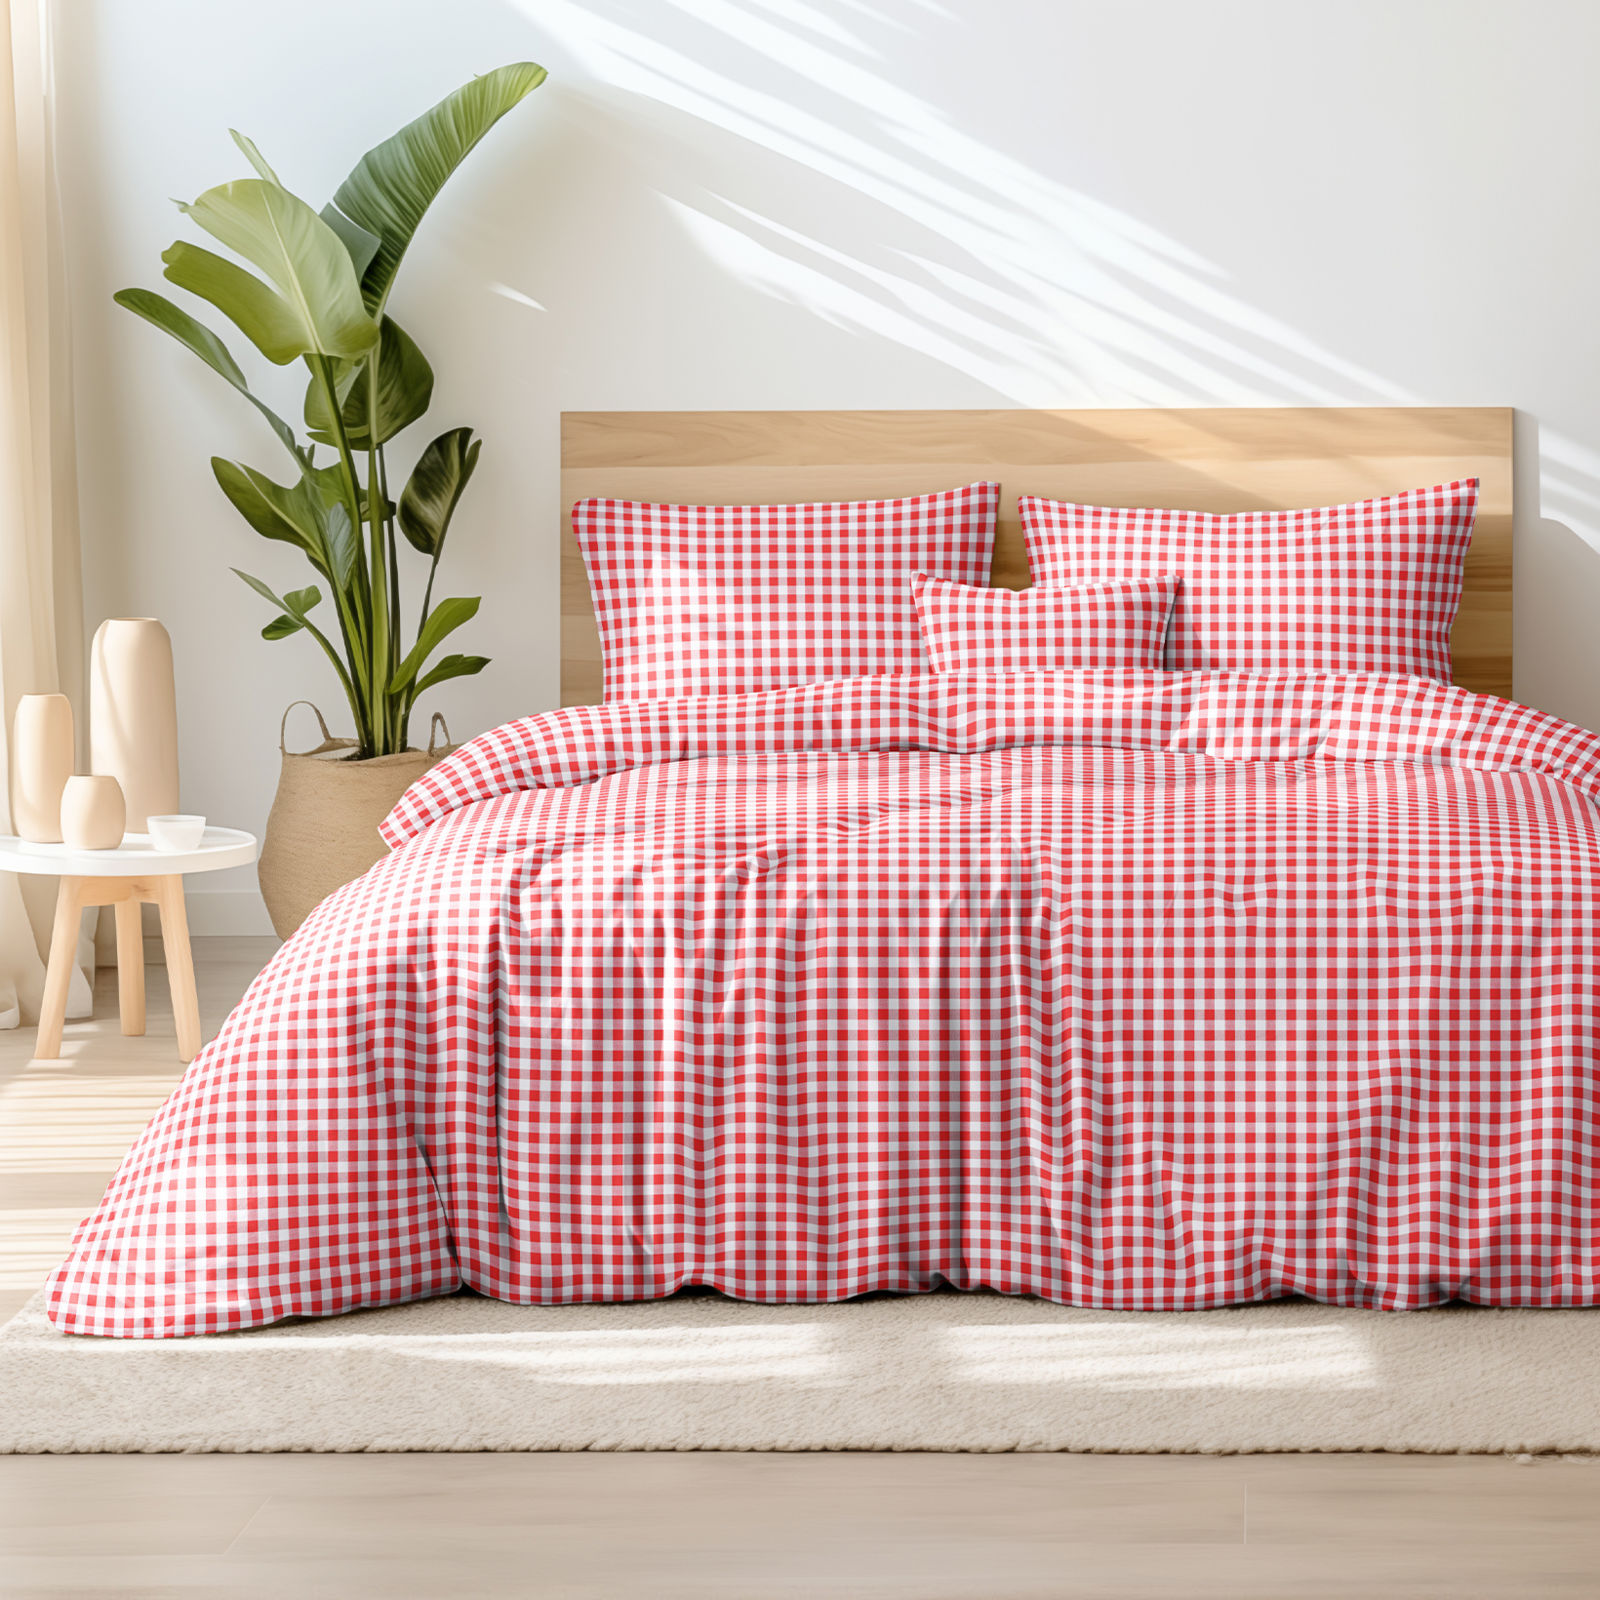 Tradičné bavlnené posteľné obliečky - červené a biele kocky